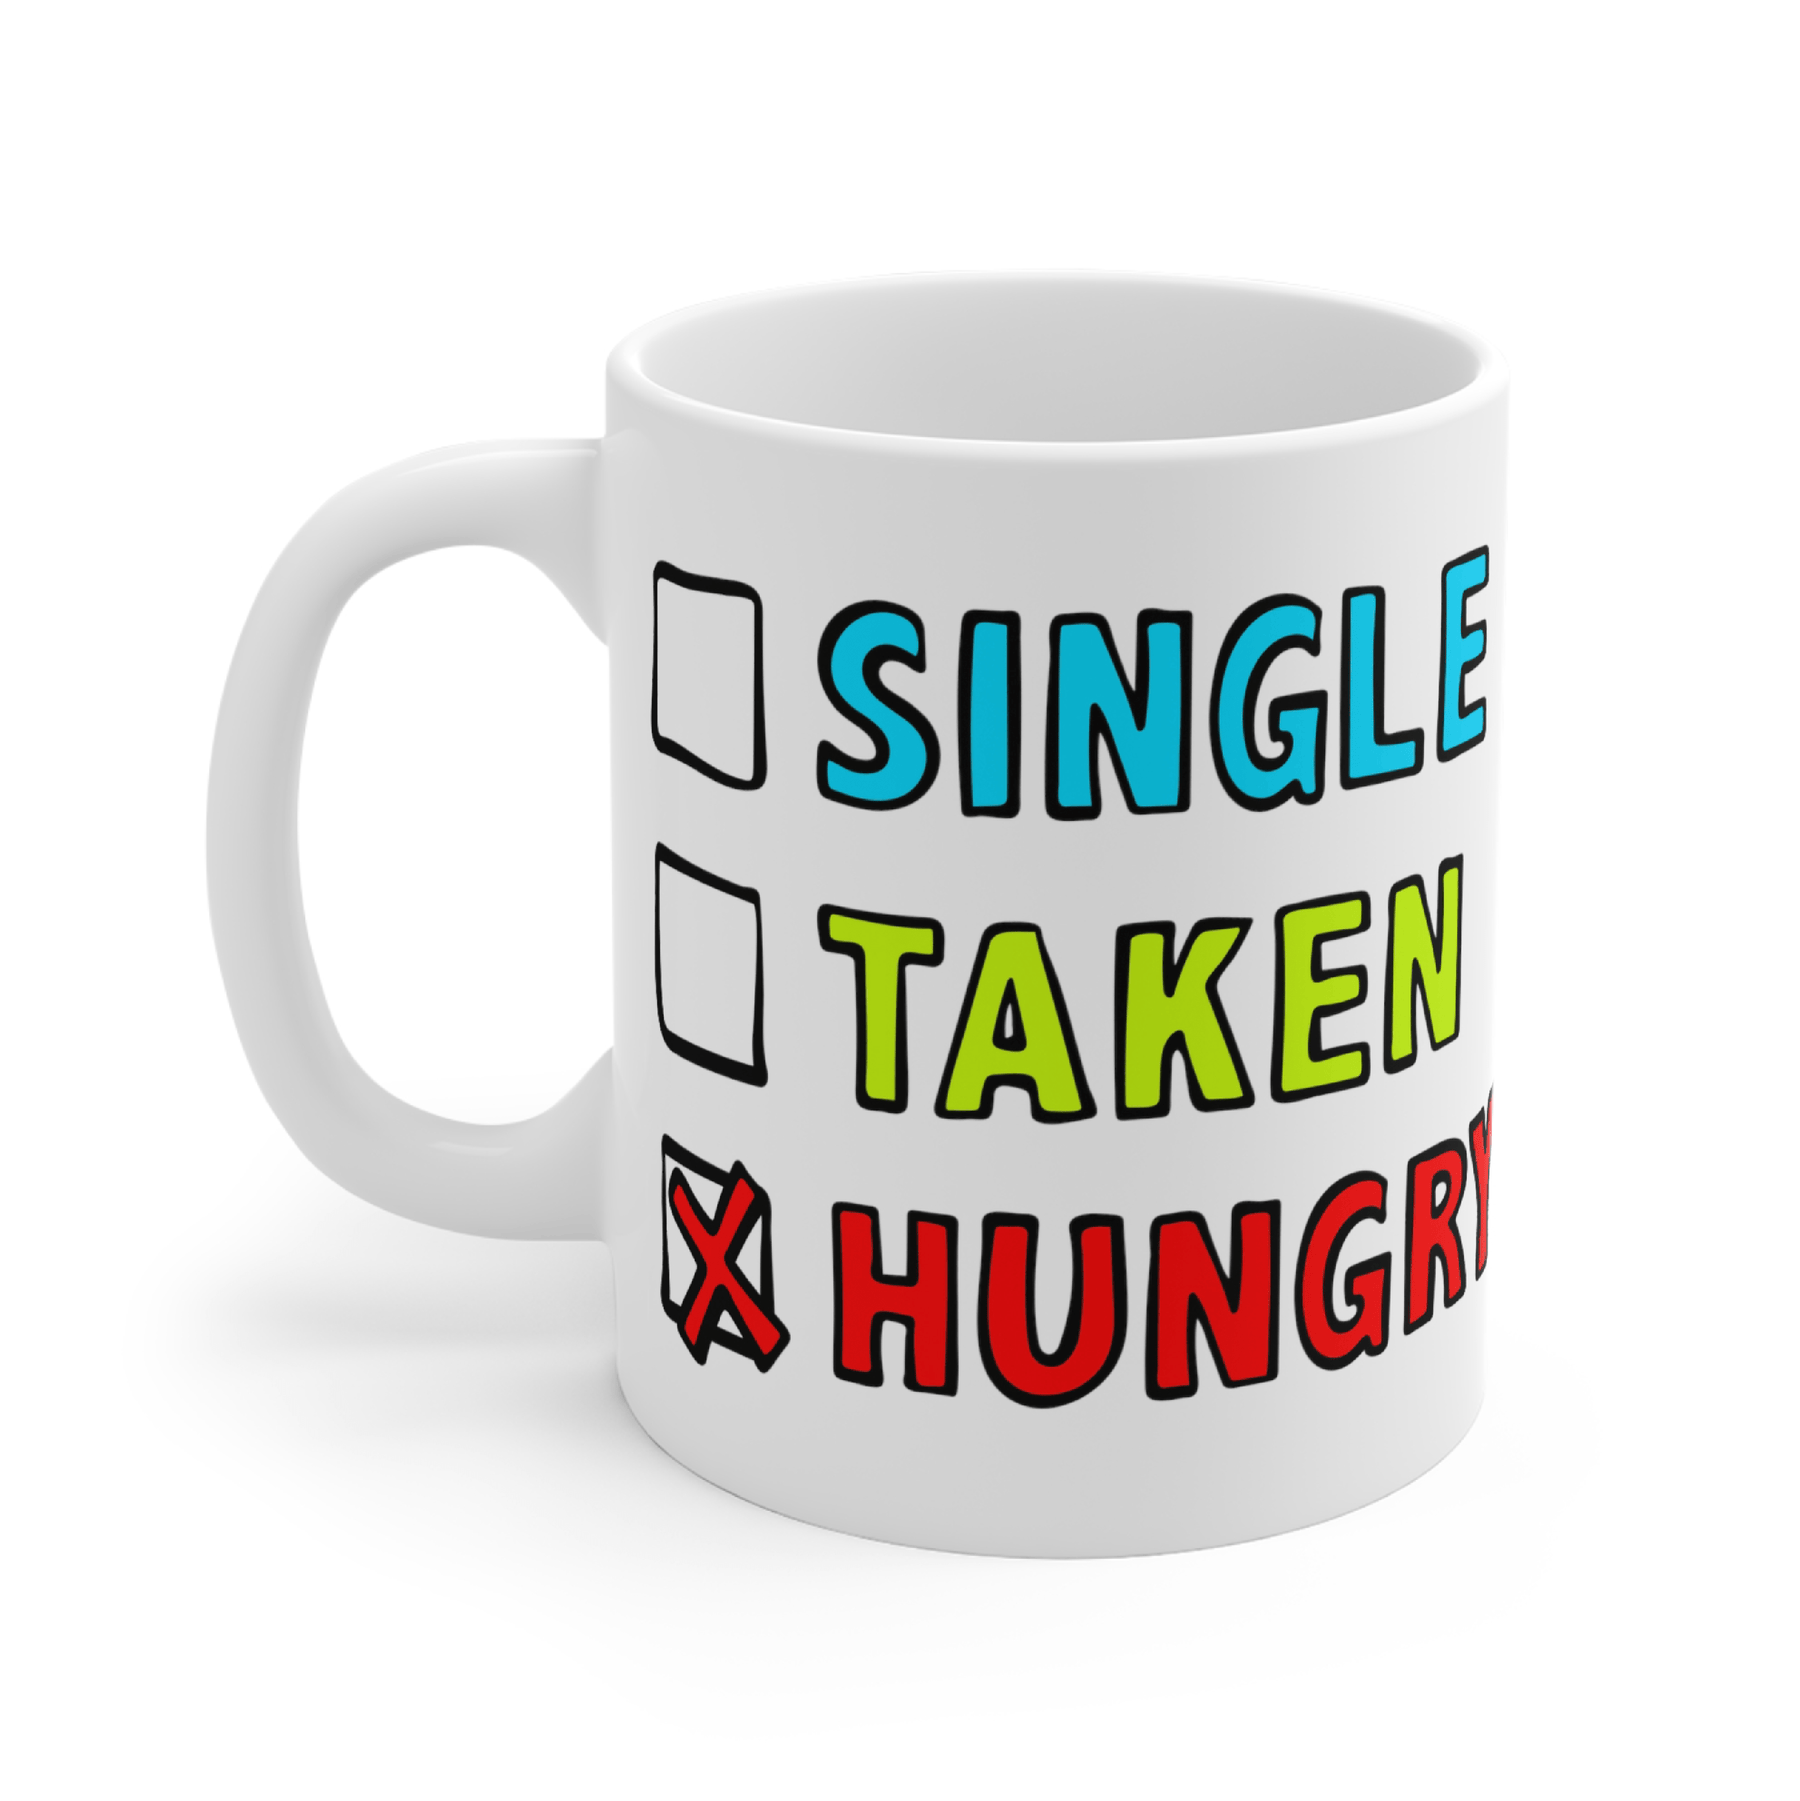 Single taken hungry ðð